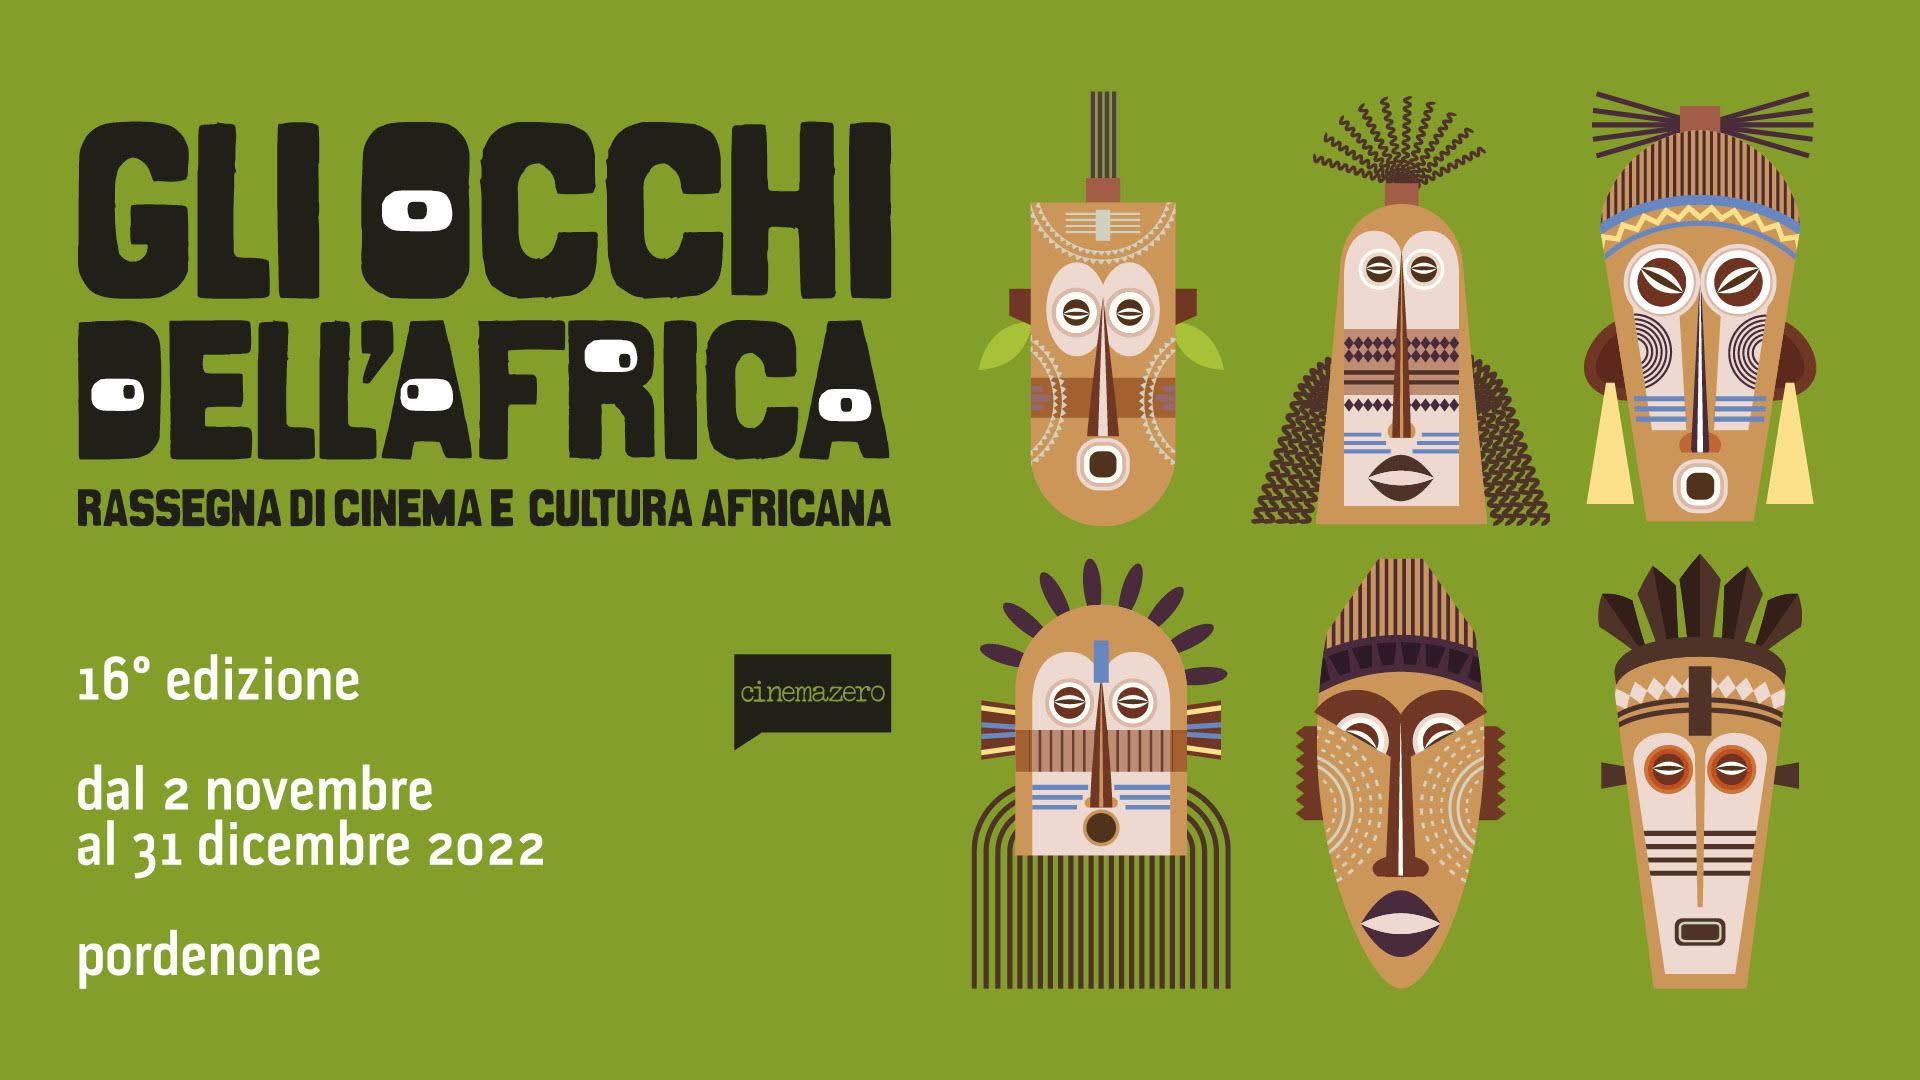 PORDENONE : XVI Edizione rassegna cinematografica “Gli occhi dell’Africa”